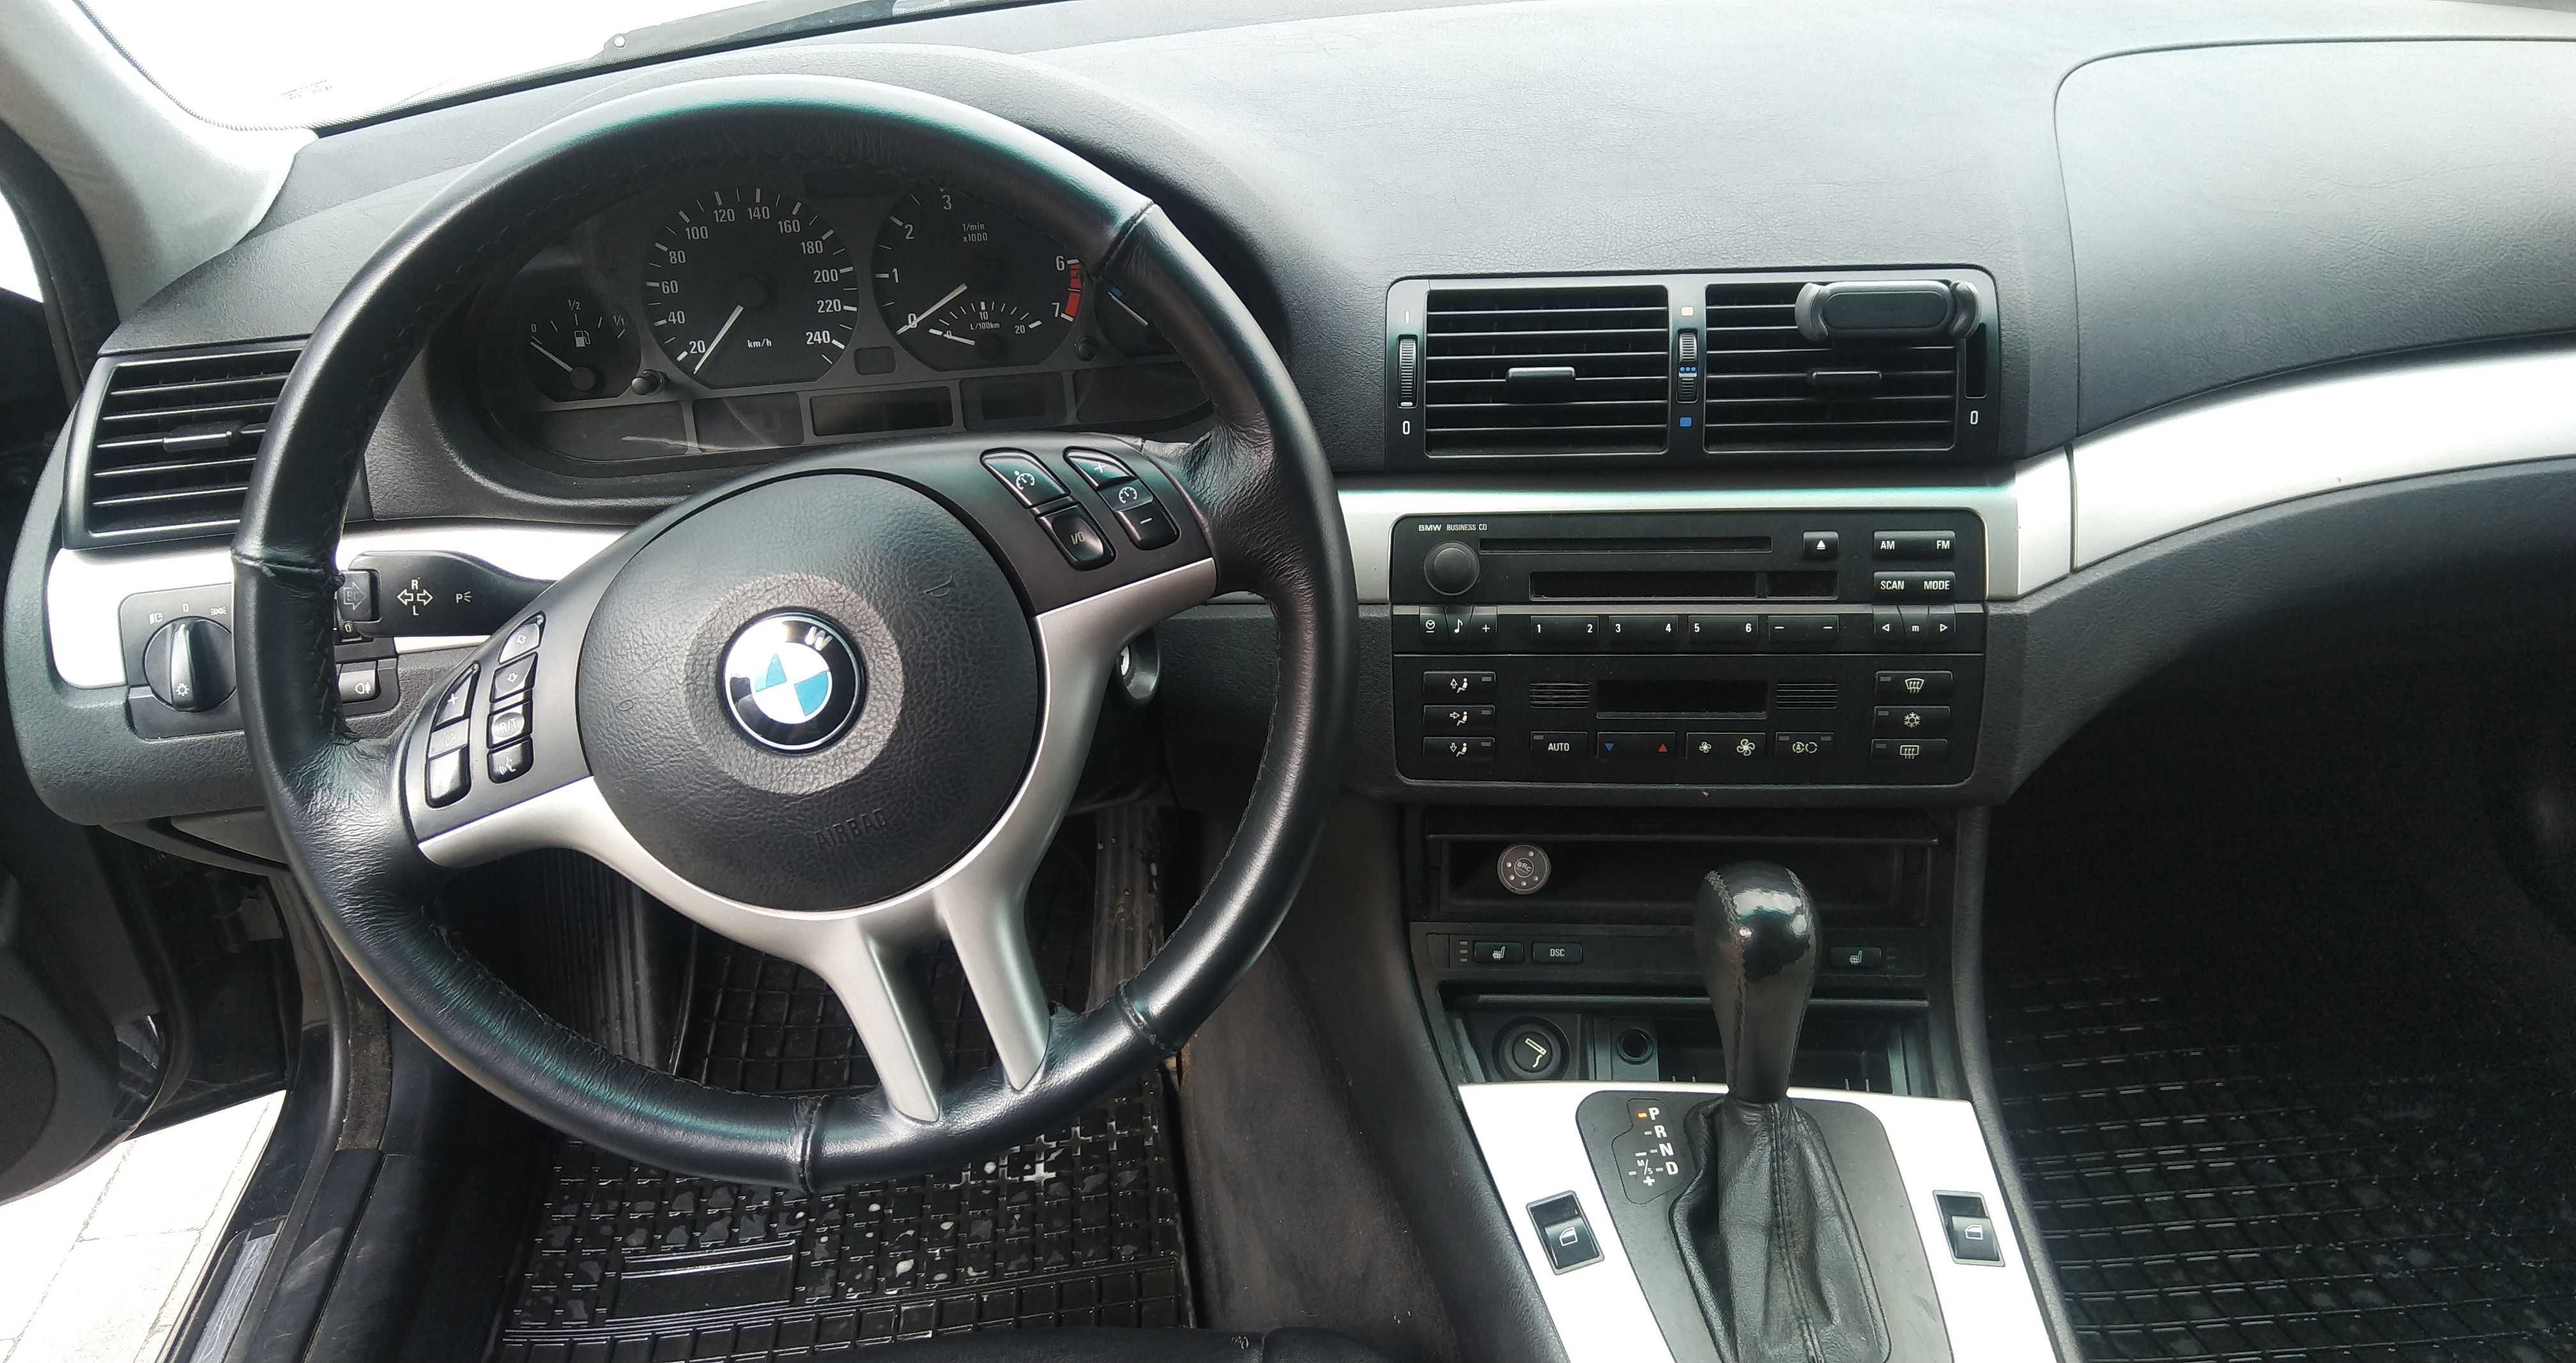 BMW E46 2003r polift 2.2L 170 KM benzyna+lpg, automat, klima, skóry